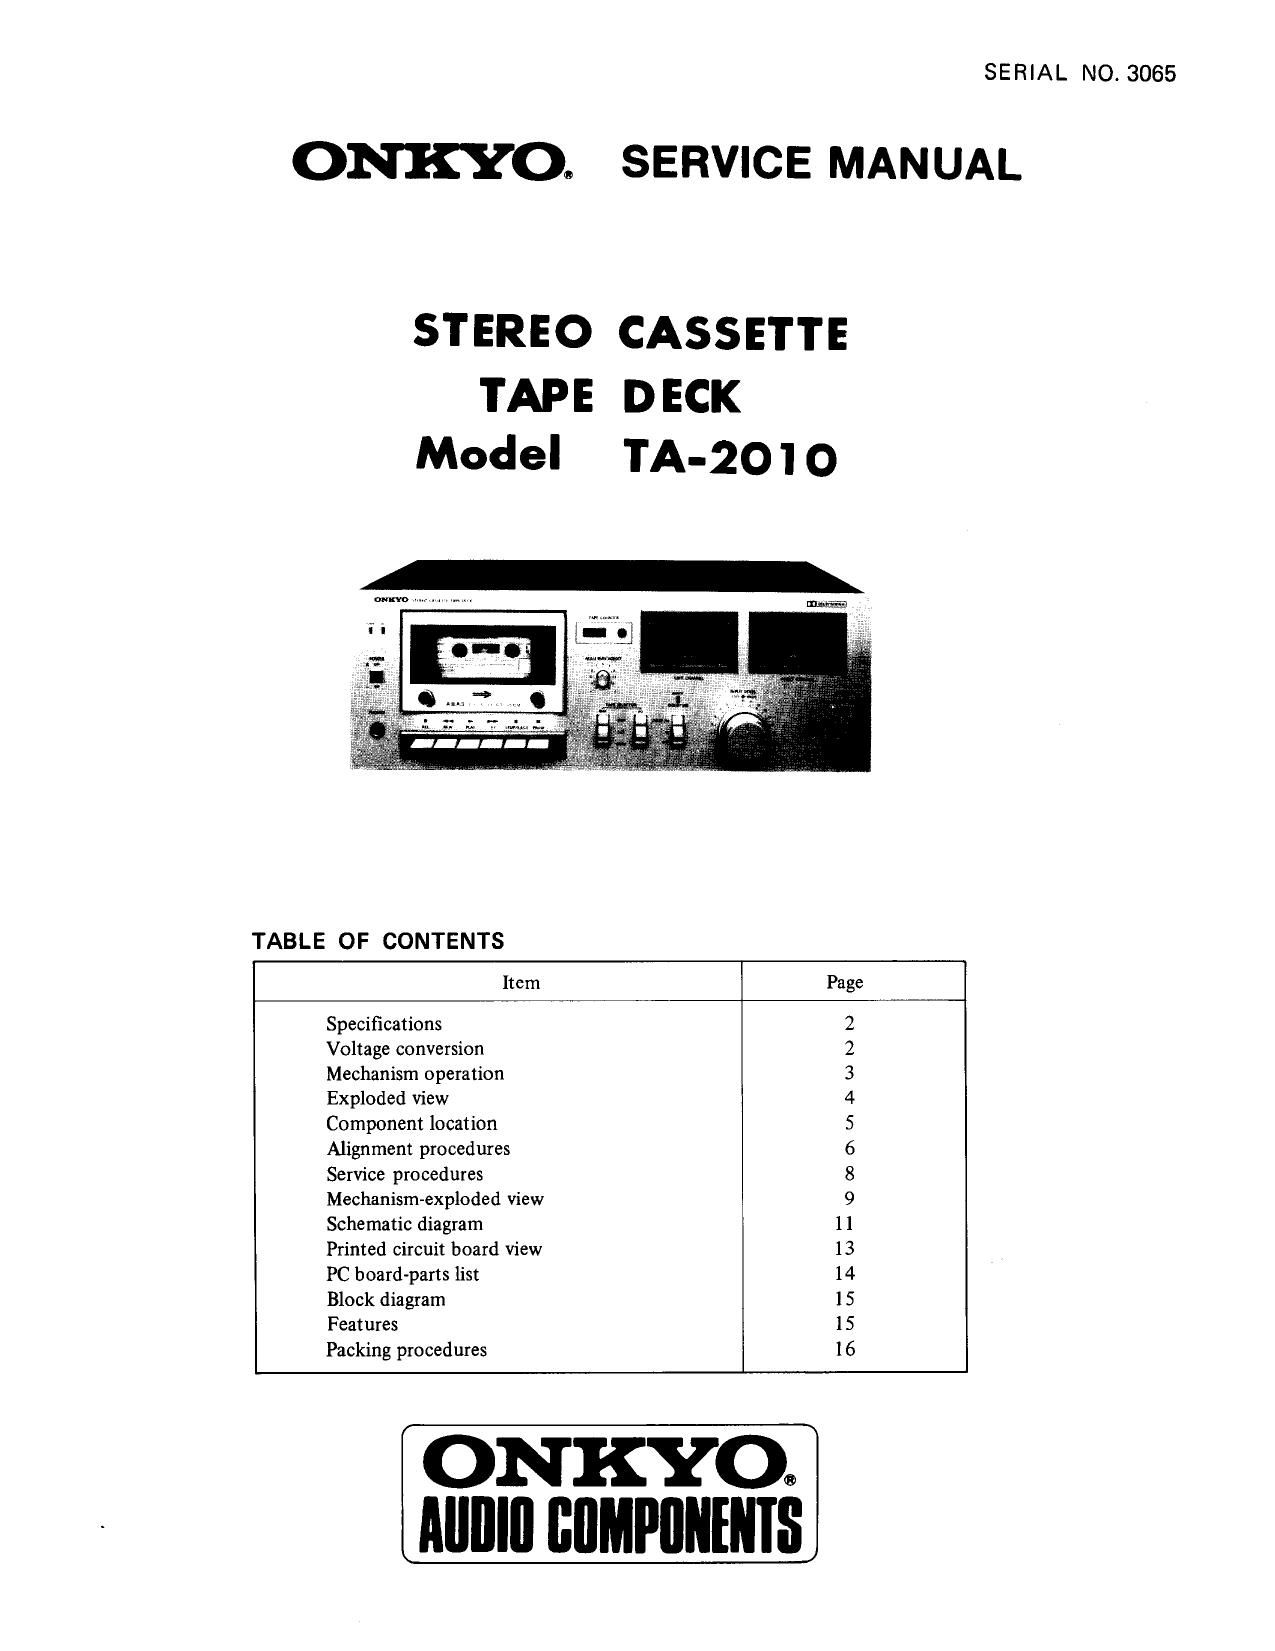 Onkyo TA 2010 Service Manual